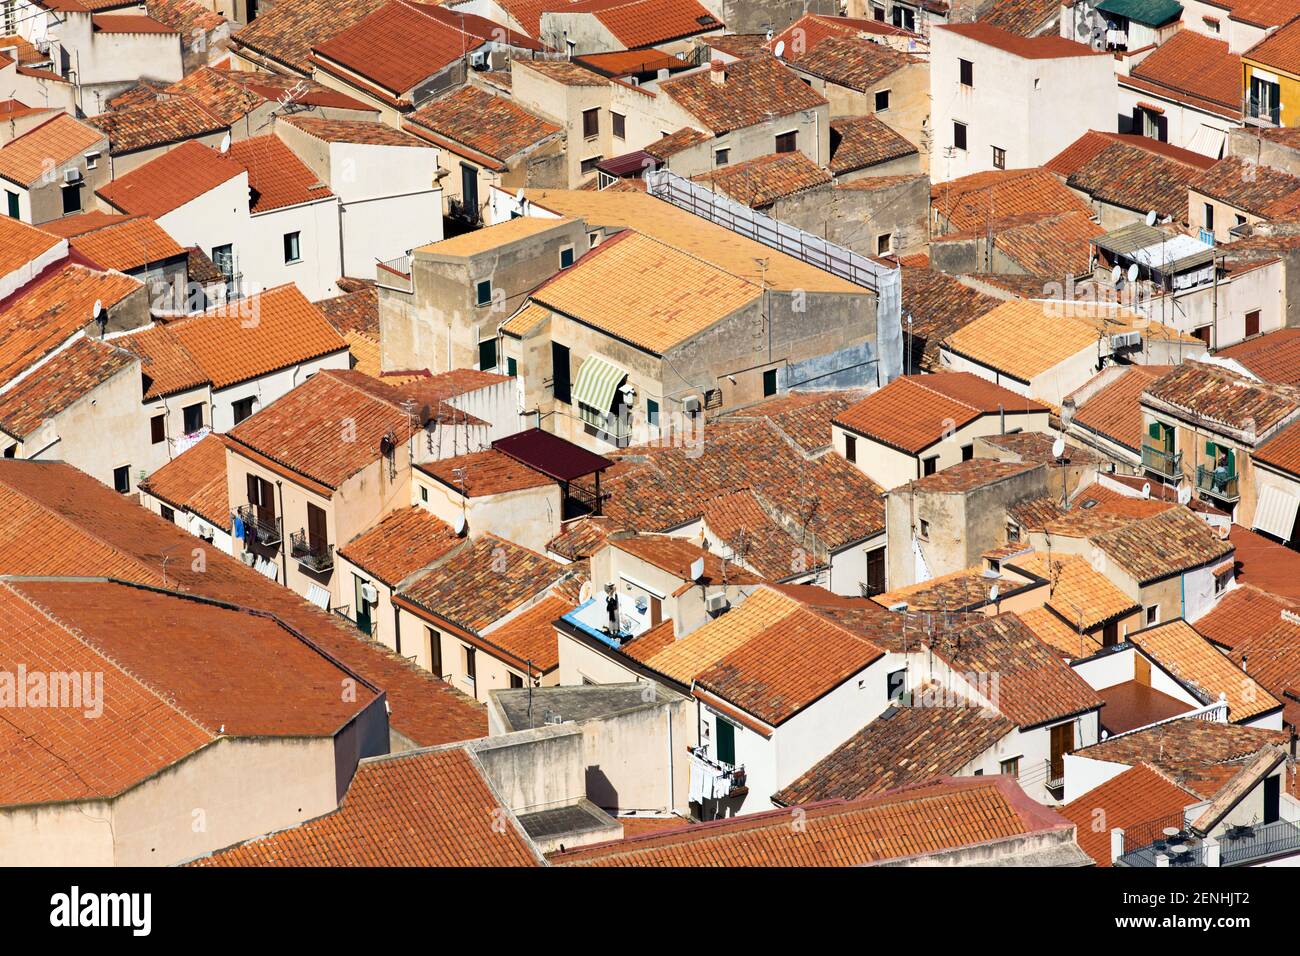 Italia,Sicilia,Cefalù, vista aerea dei tetti in tegole rosse di Cefalù Foto Stock